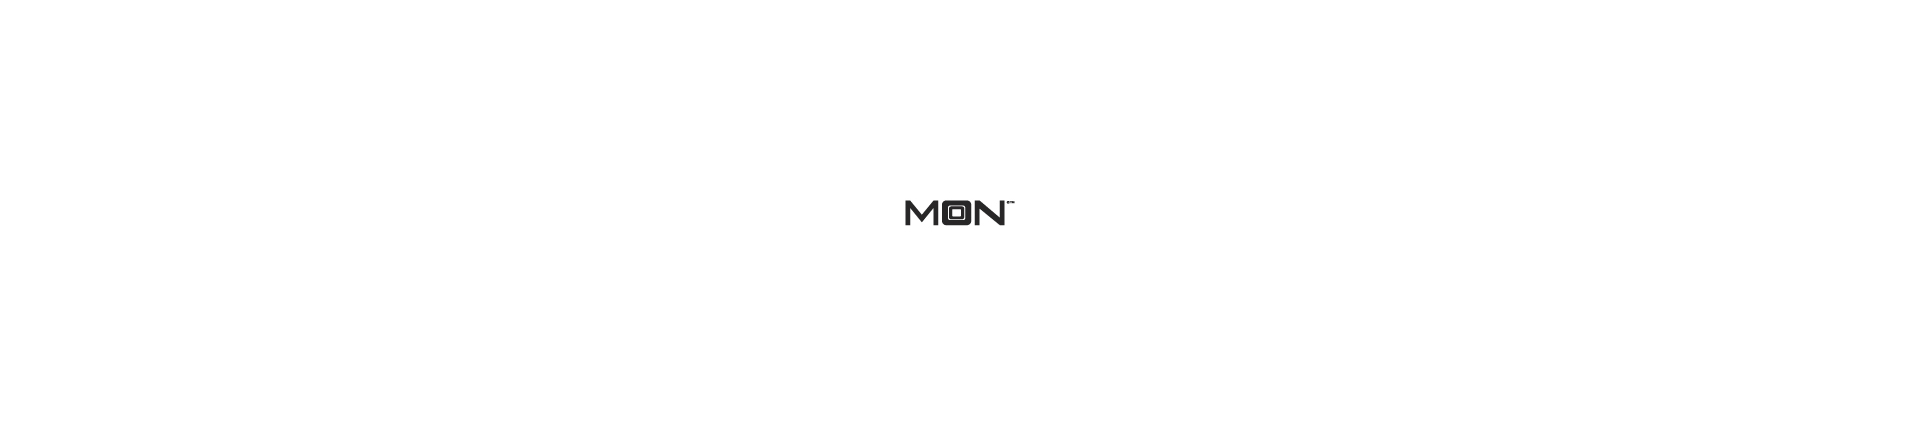 MOON™